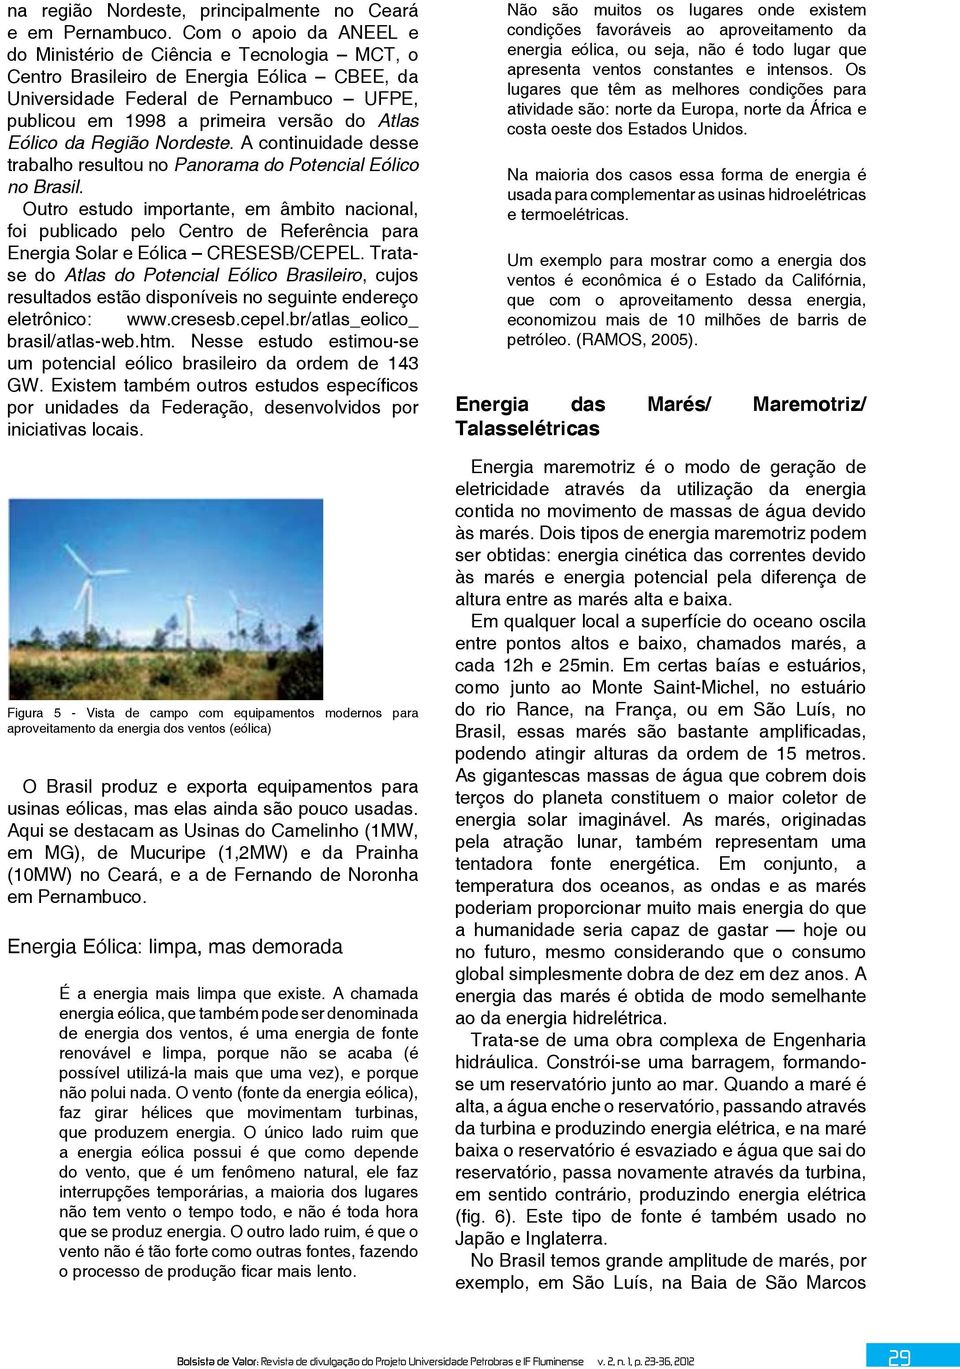 Eólico da Região Nordeste. A continuidade desse trabalho resultou no Panorama do Potencial Eólico no Brasil.